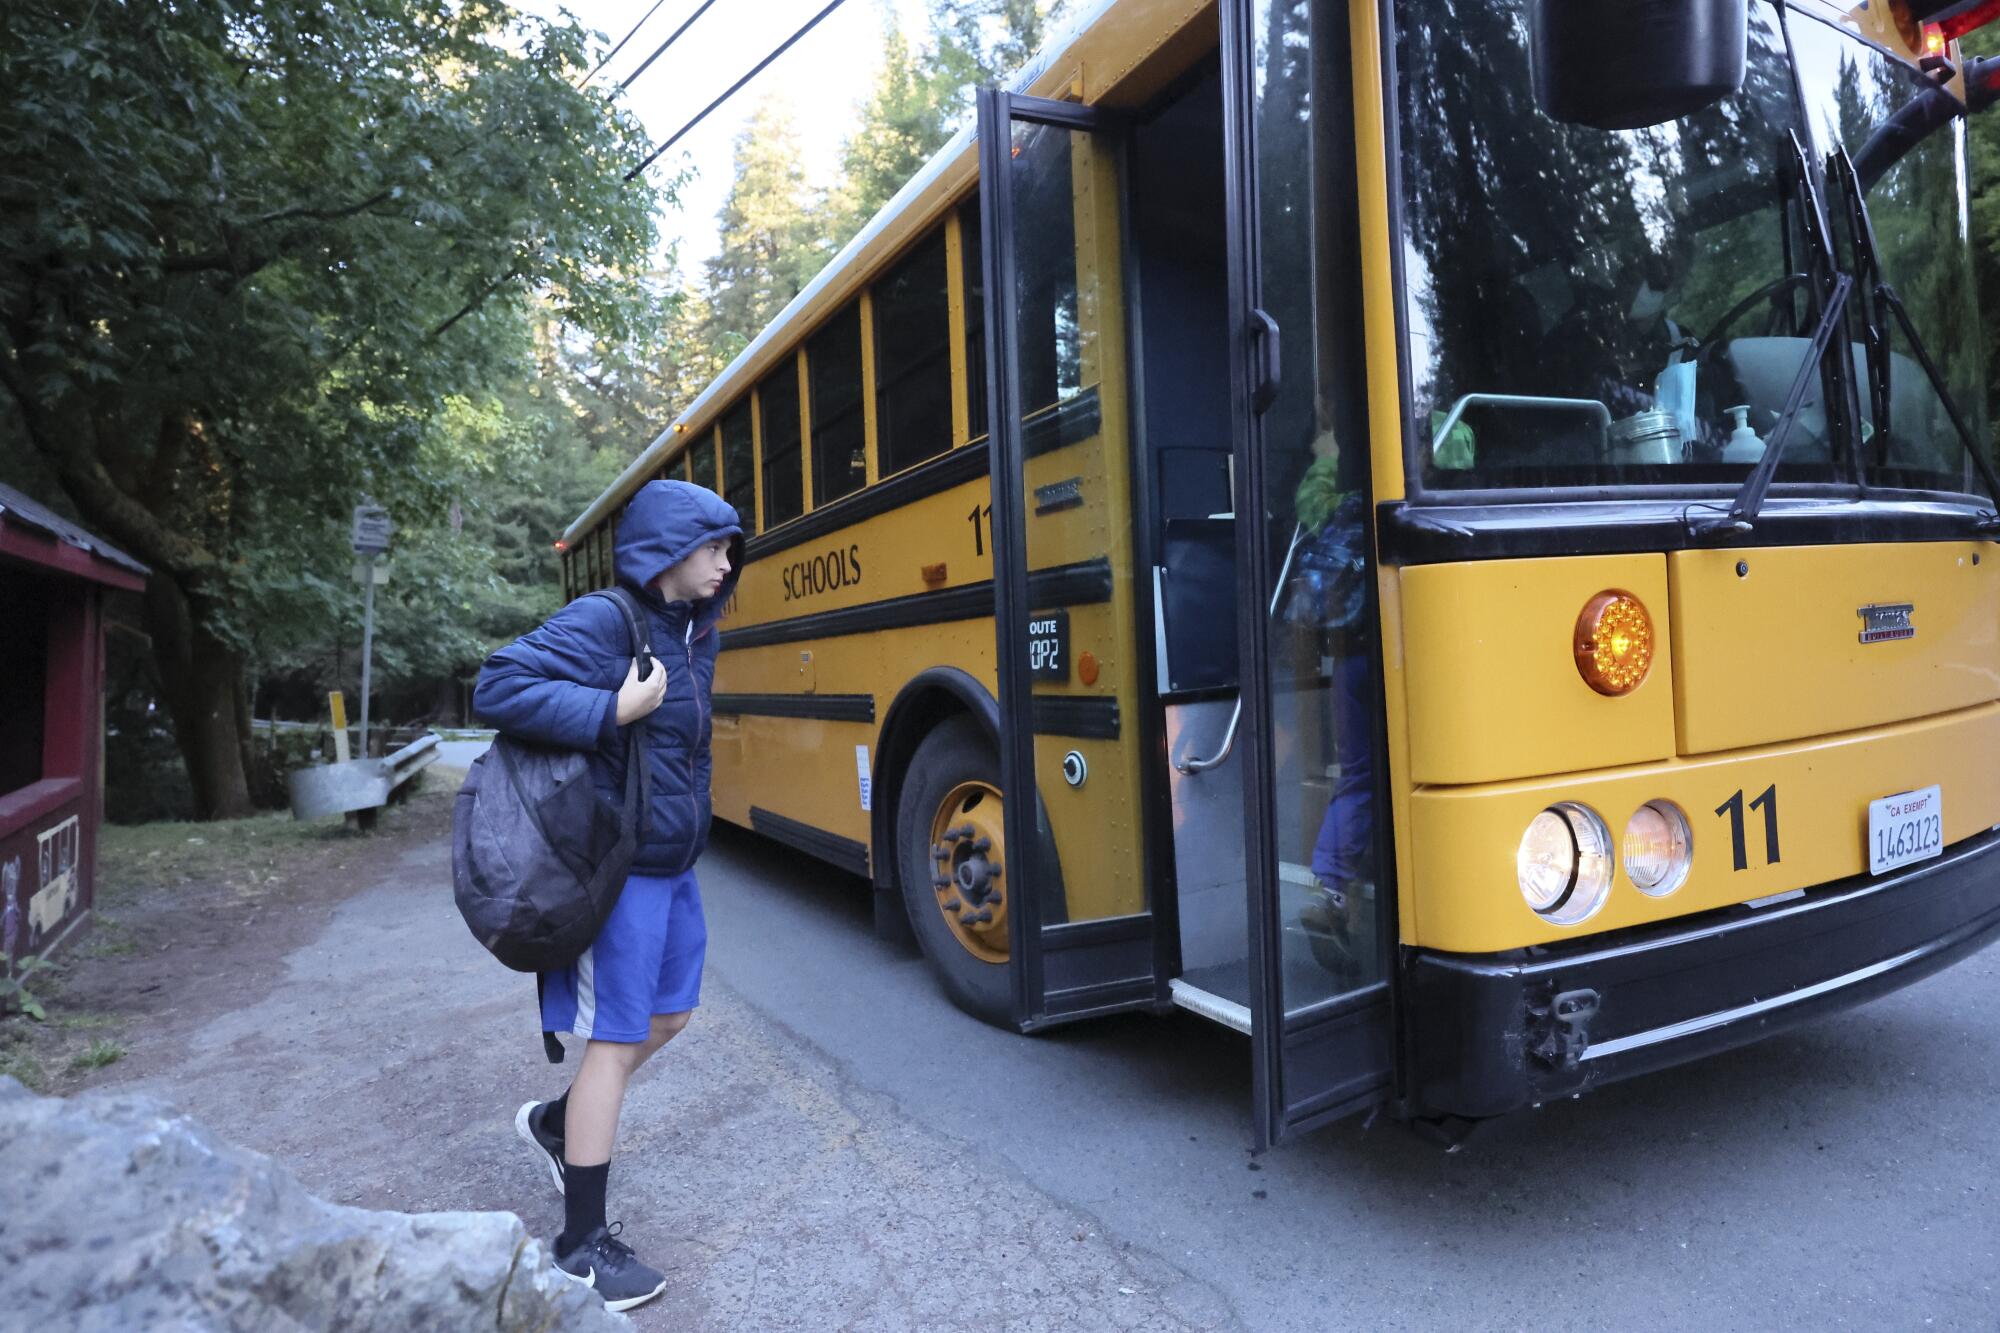 A student walks toward the opened door of a yellow school bus.